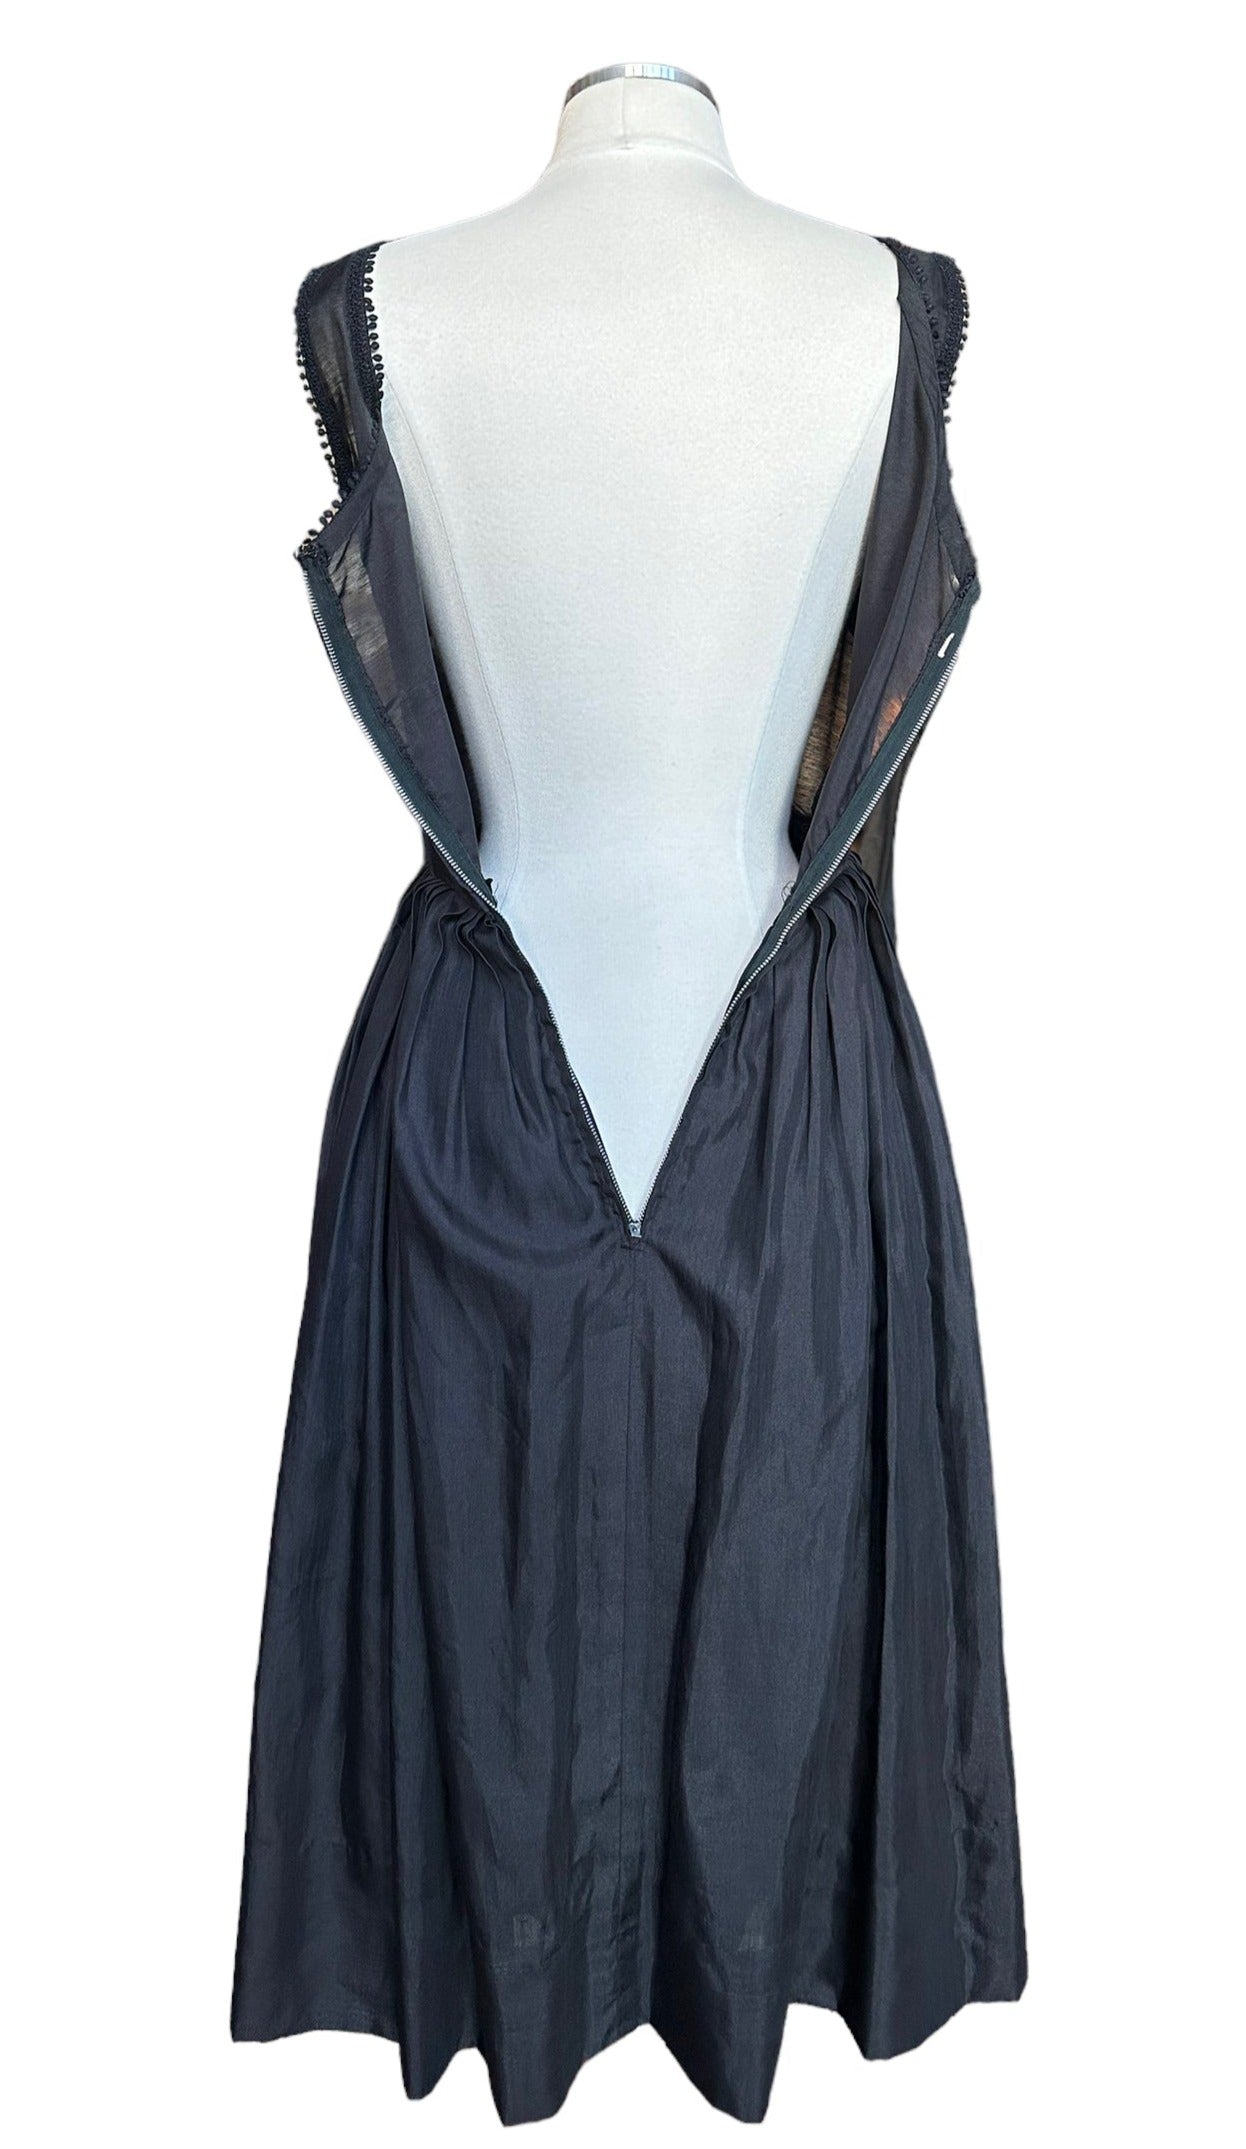 Full back view open zipper Vintage Early 1950s Black Dress | Barn Owl Ladies | Seattle True Vintage